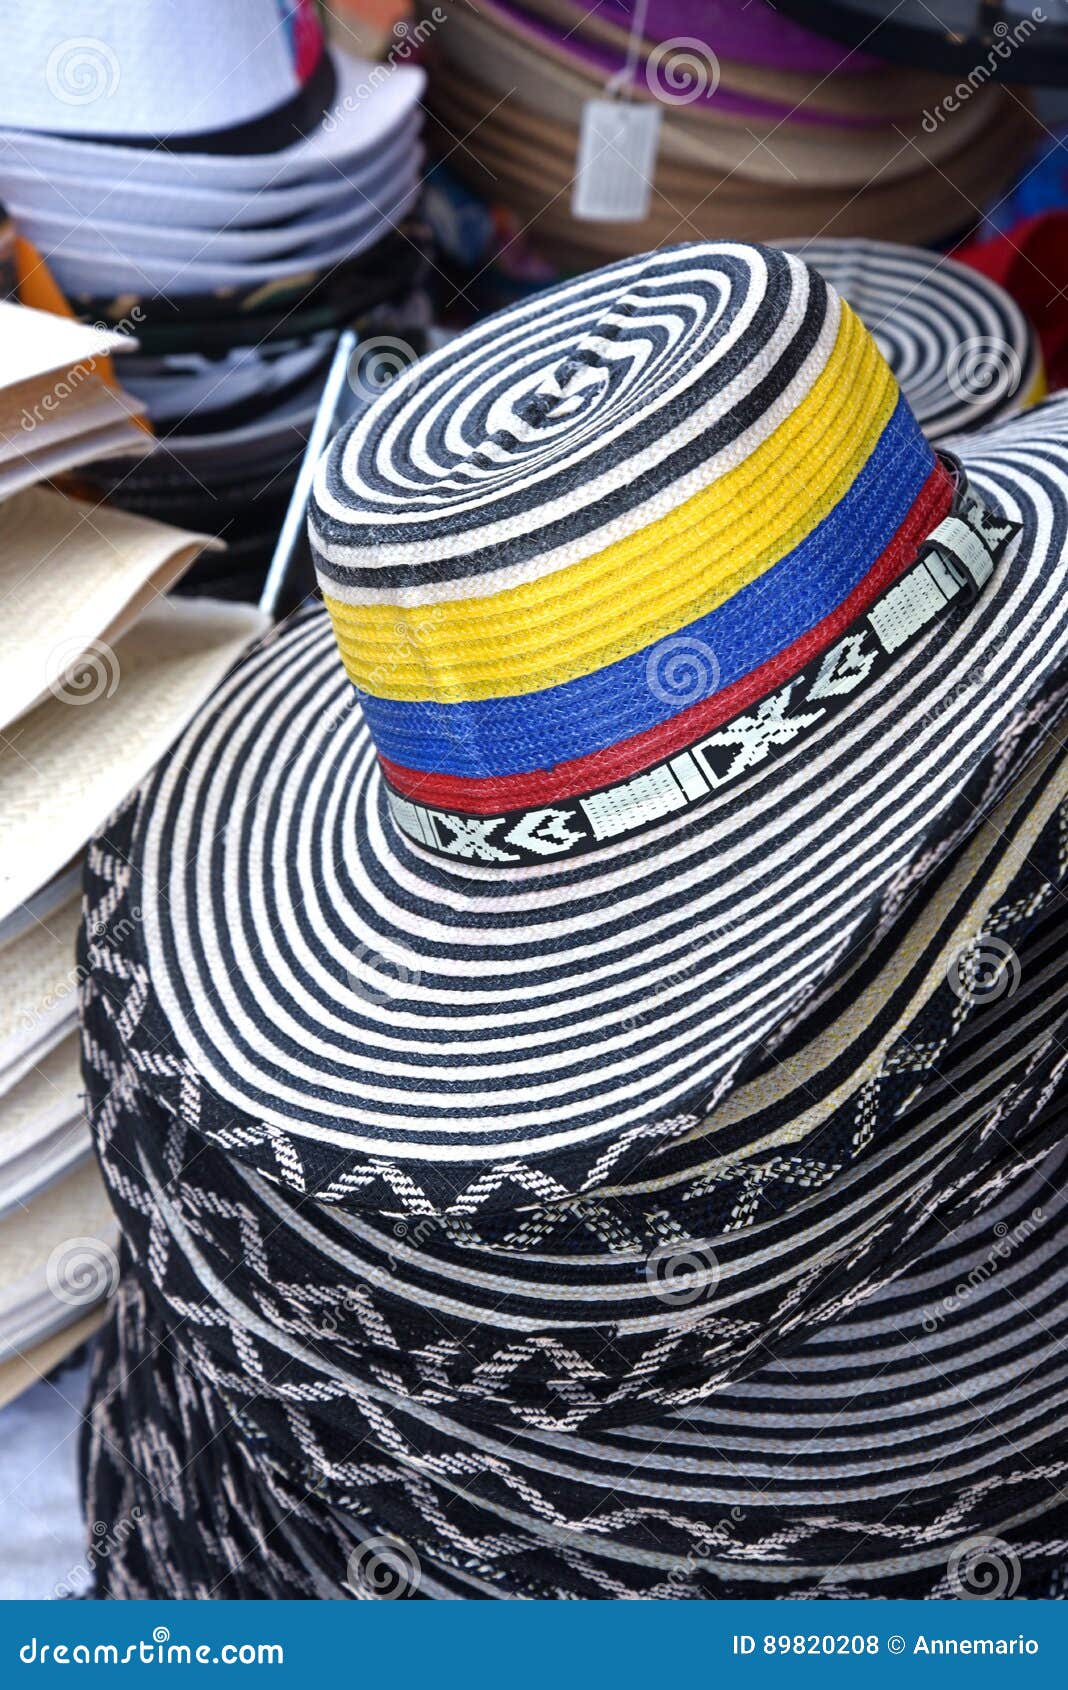 Viento Matar evolución Sombrero colombiano foto de archivo. Imagen de visita - 89820208